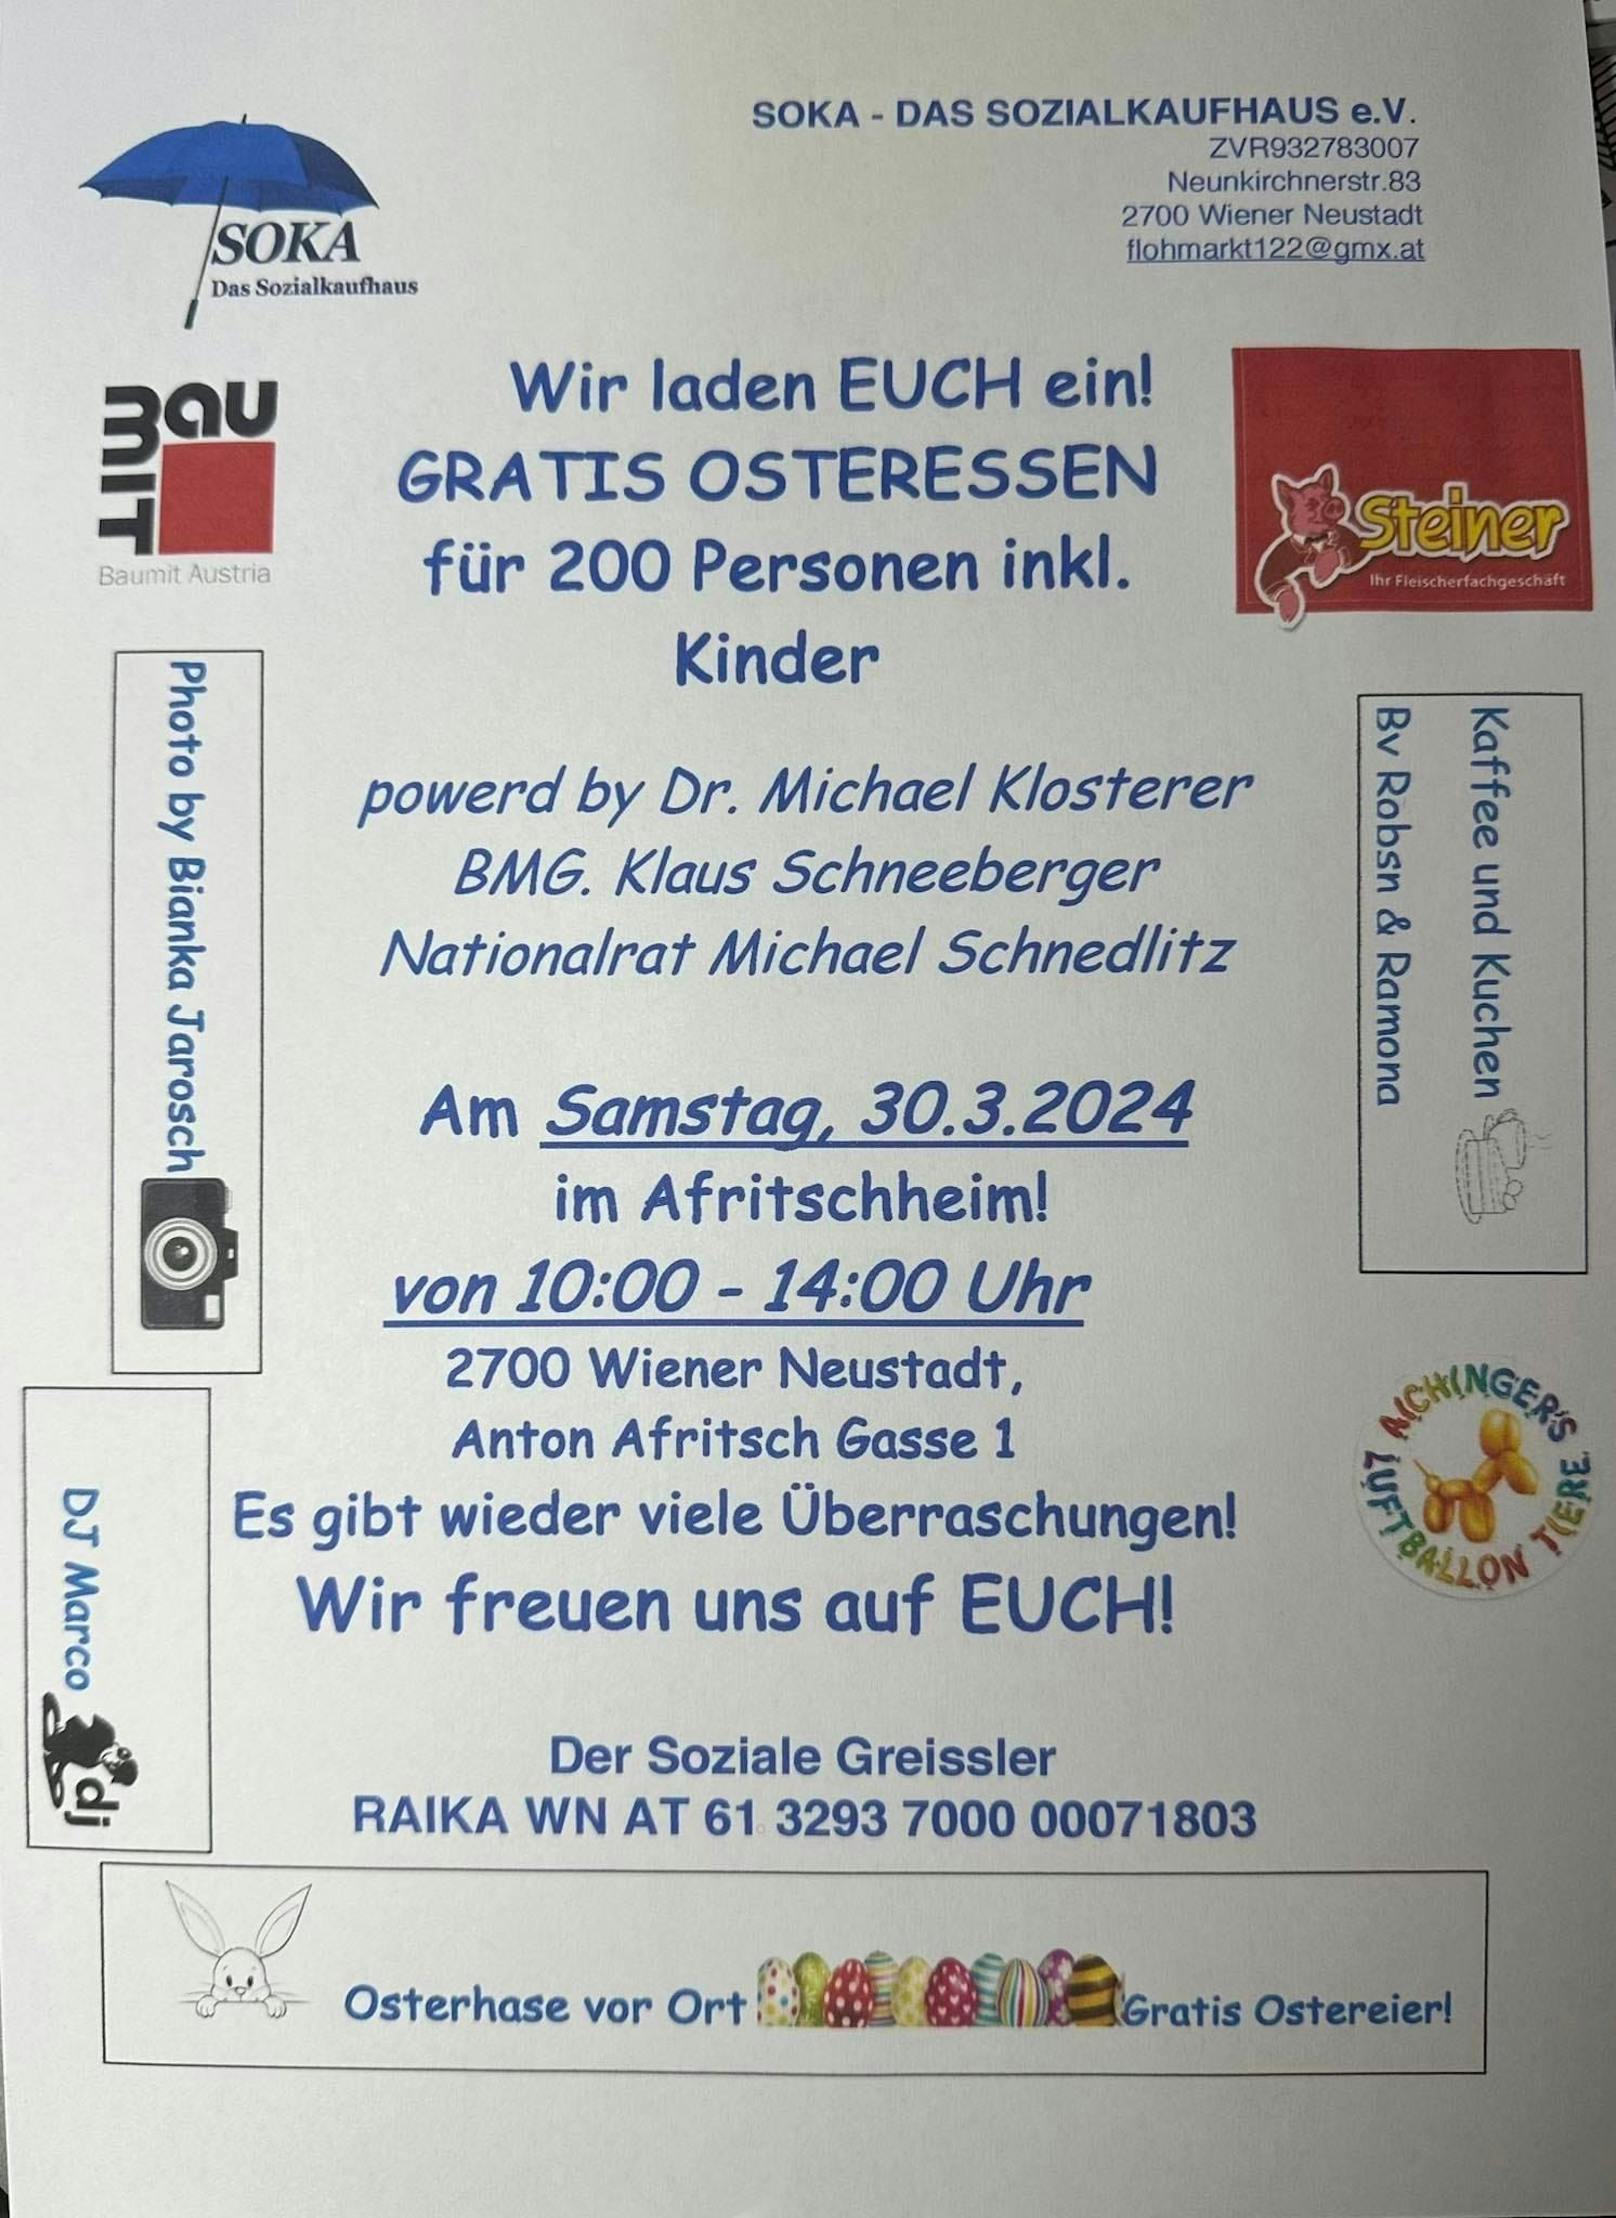 Für 200 Personen mit Kindern gibt es ein gratis Osteressen in Wr. Neustadt.